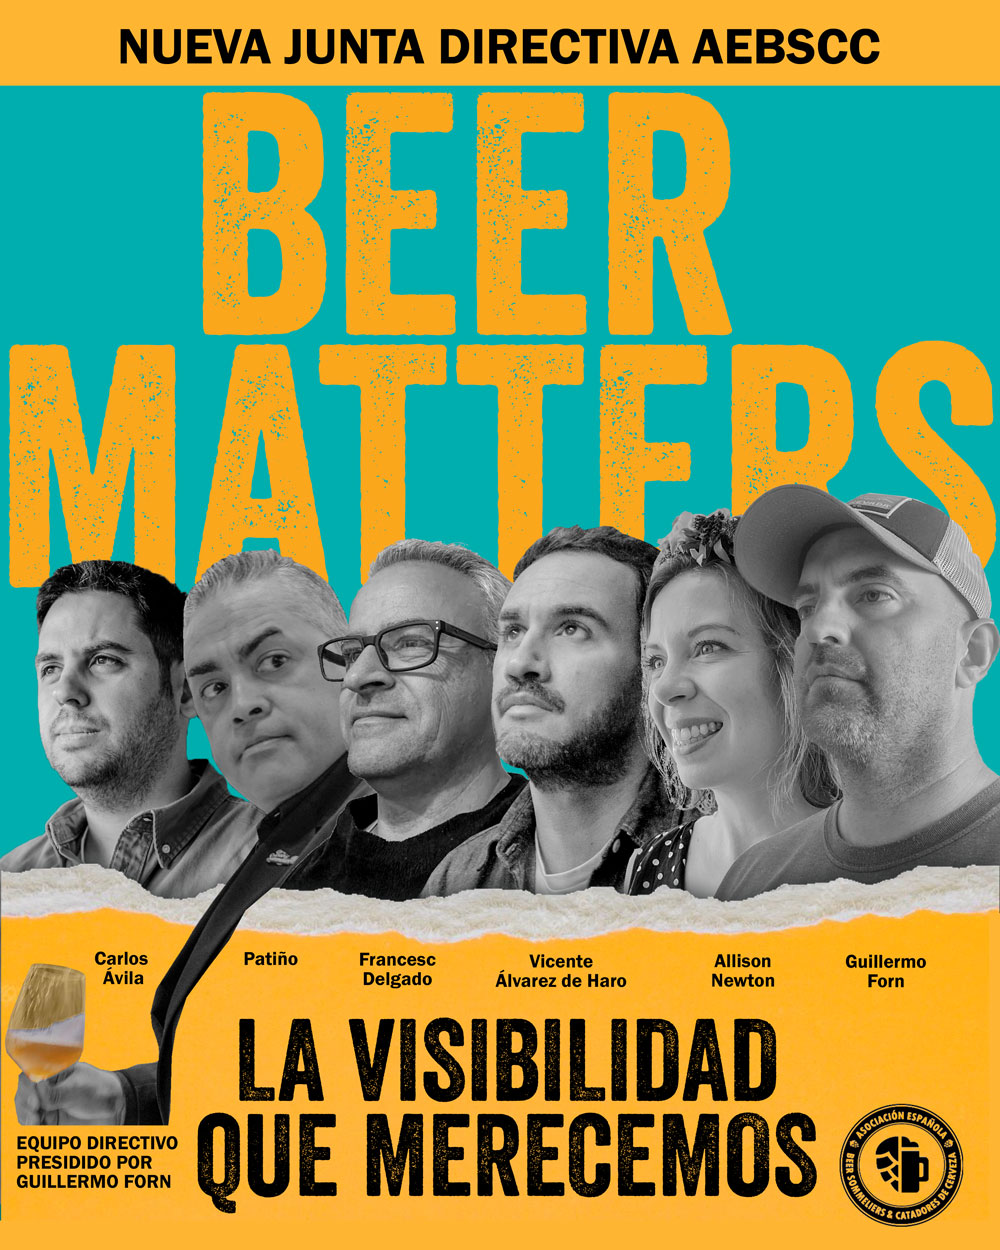 Junta Directiva AEBSCC Asociación Beer Sommeliers